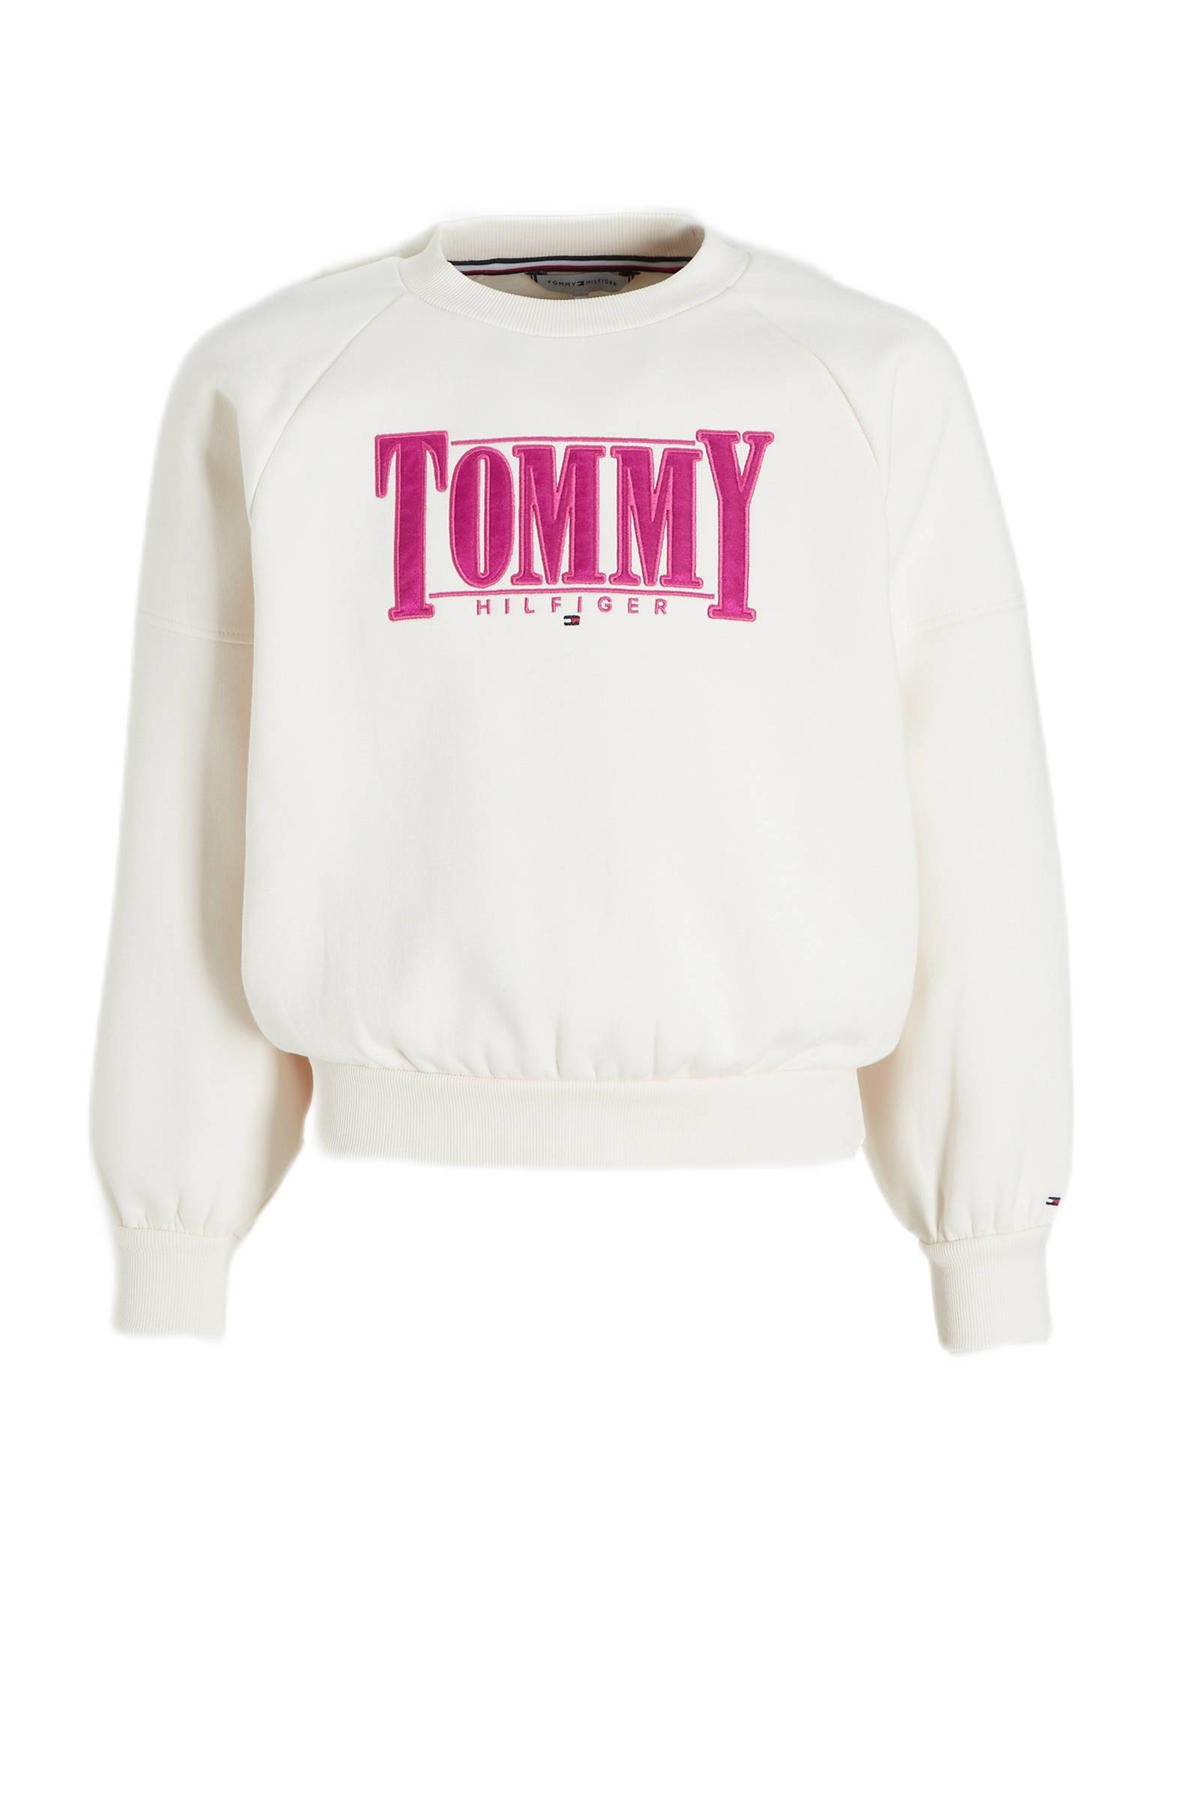 Veeg roestvrij zondag Tommy Hilfiger sweater met logo wit/roze | wehkamp